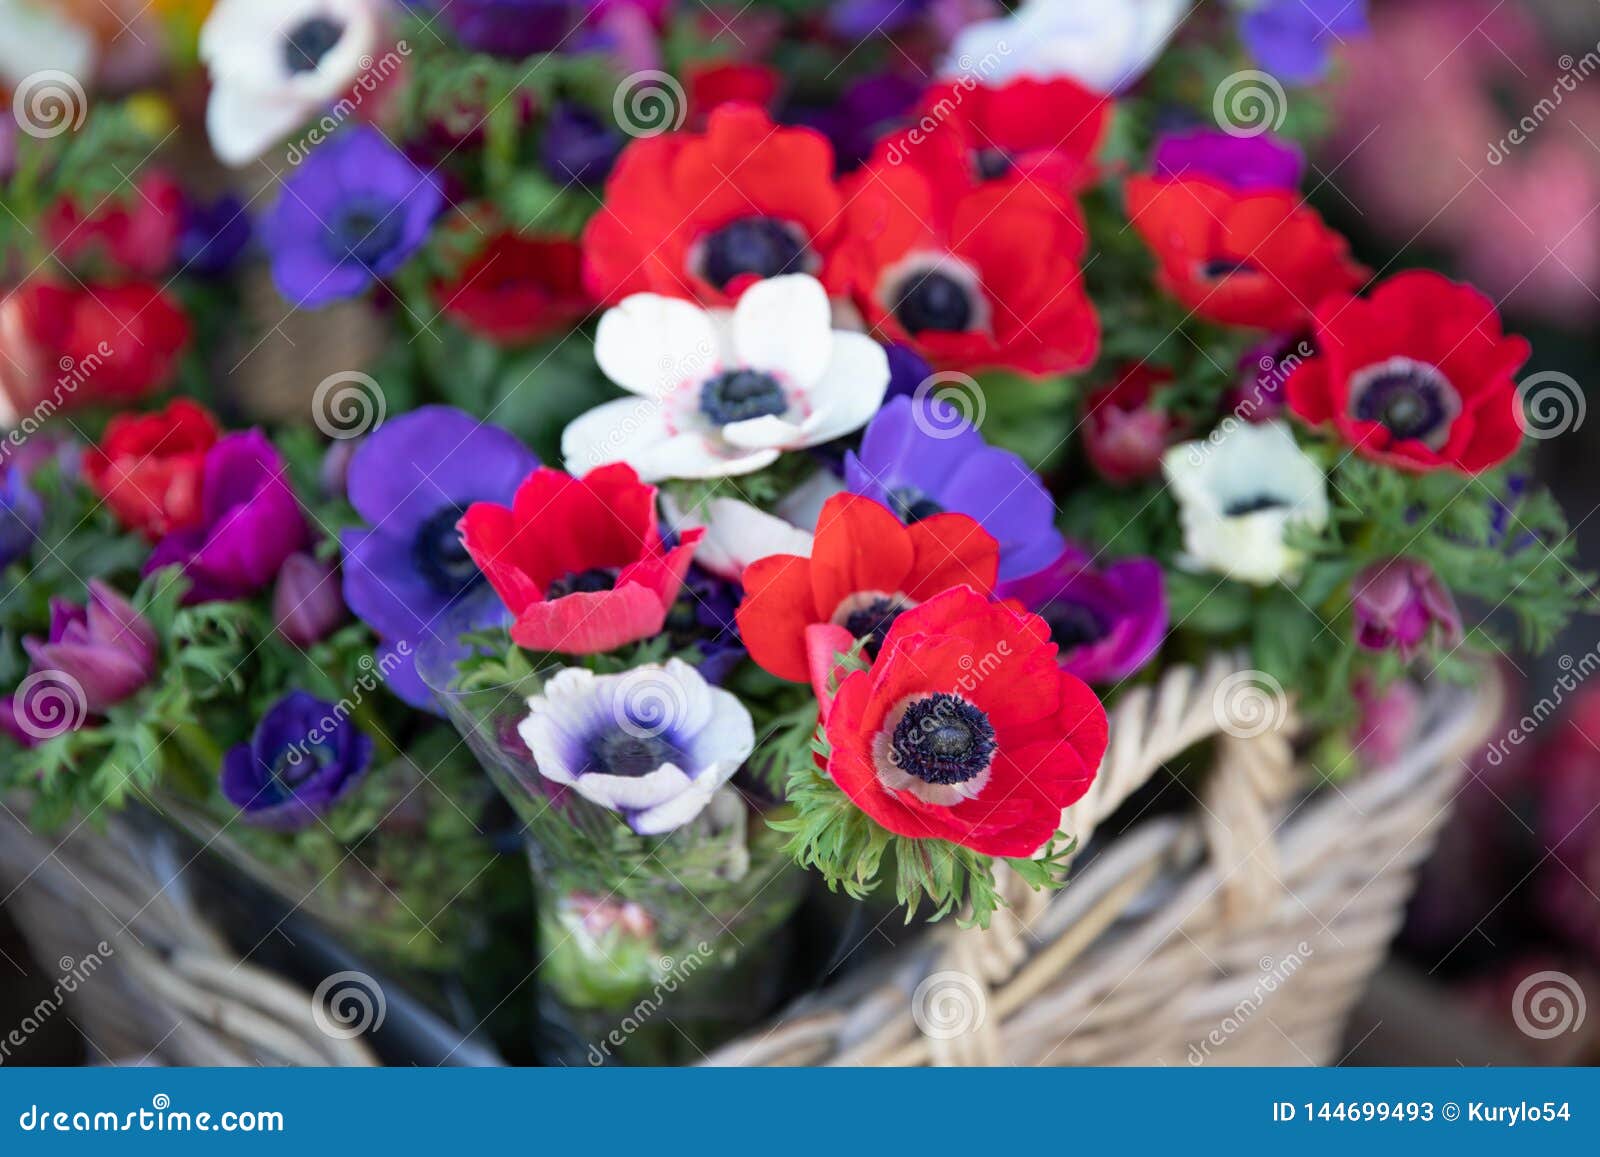 Belles Fleurs De Coronaria D'anémone De Printemps Dans Des Couleurs Rouges,  Blanches, Magenta, Bleues Image stock - Image du bouquet, pavot: 144699493